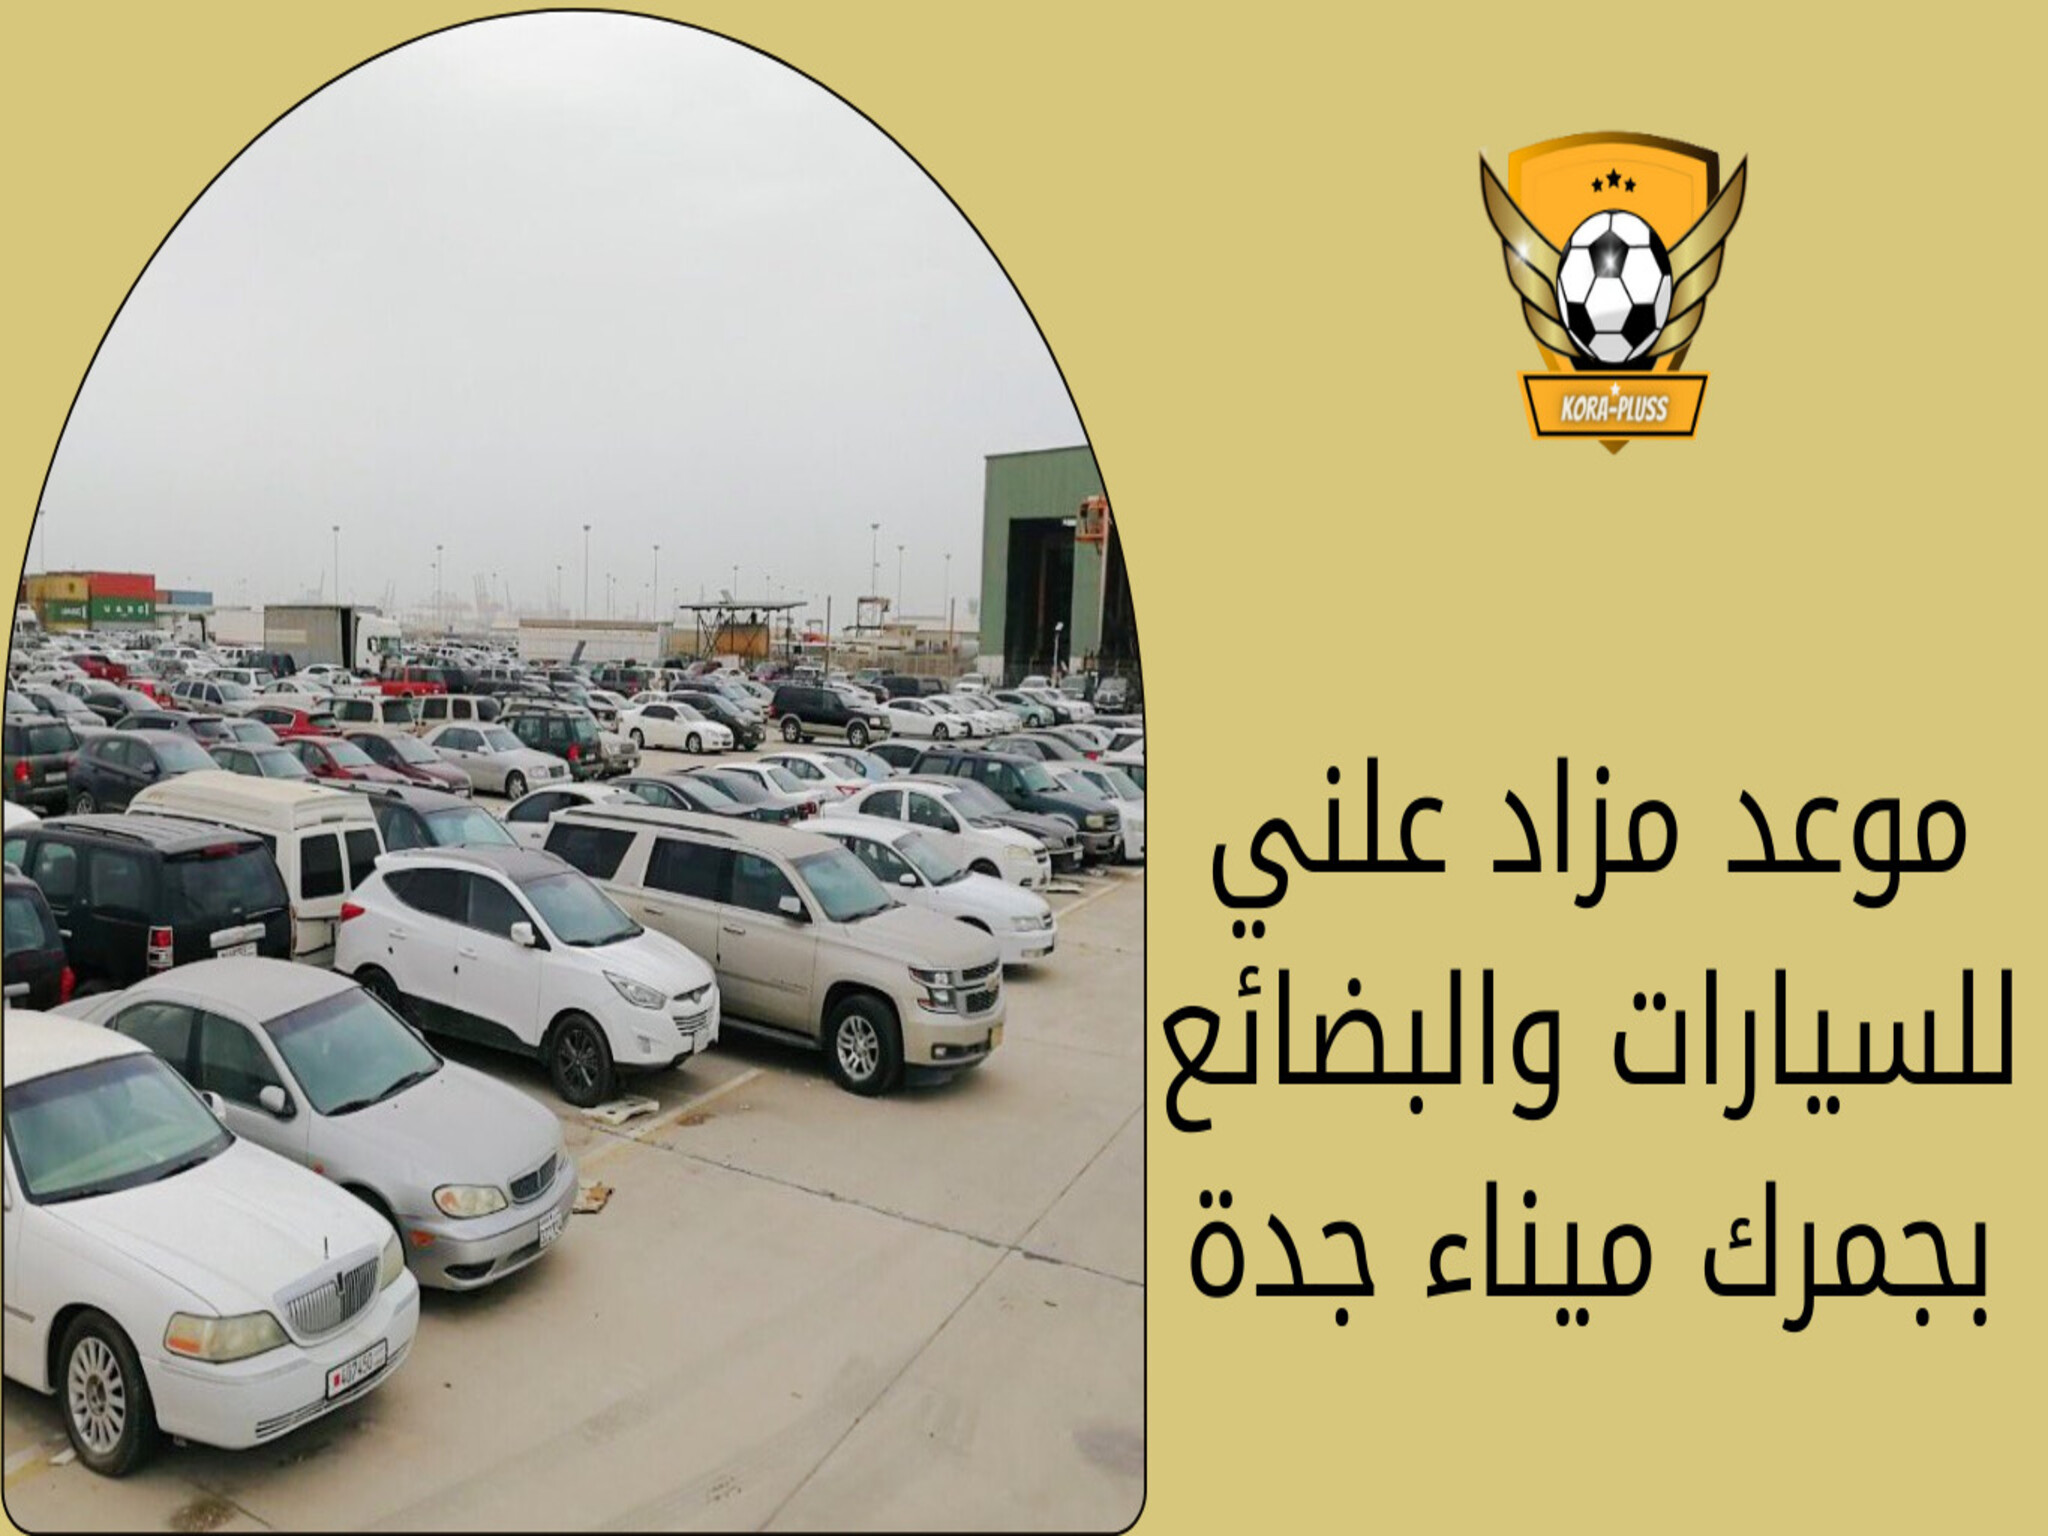 " الجمارك" تعلن عن طرح مزاد لبيع بضائع وسيارات في ميناء جدة الأسلامي